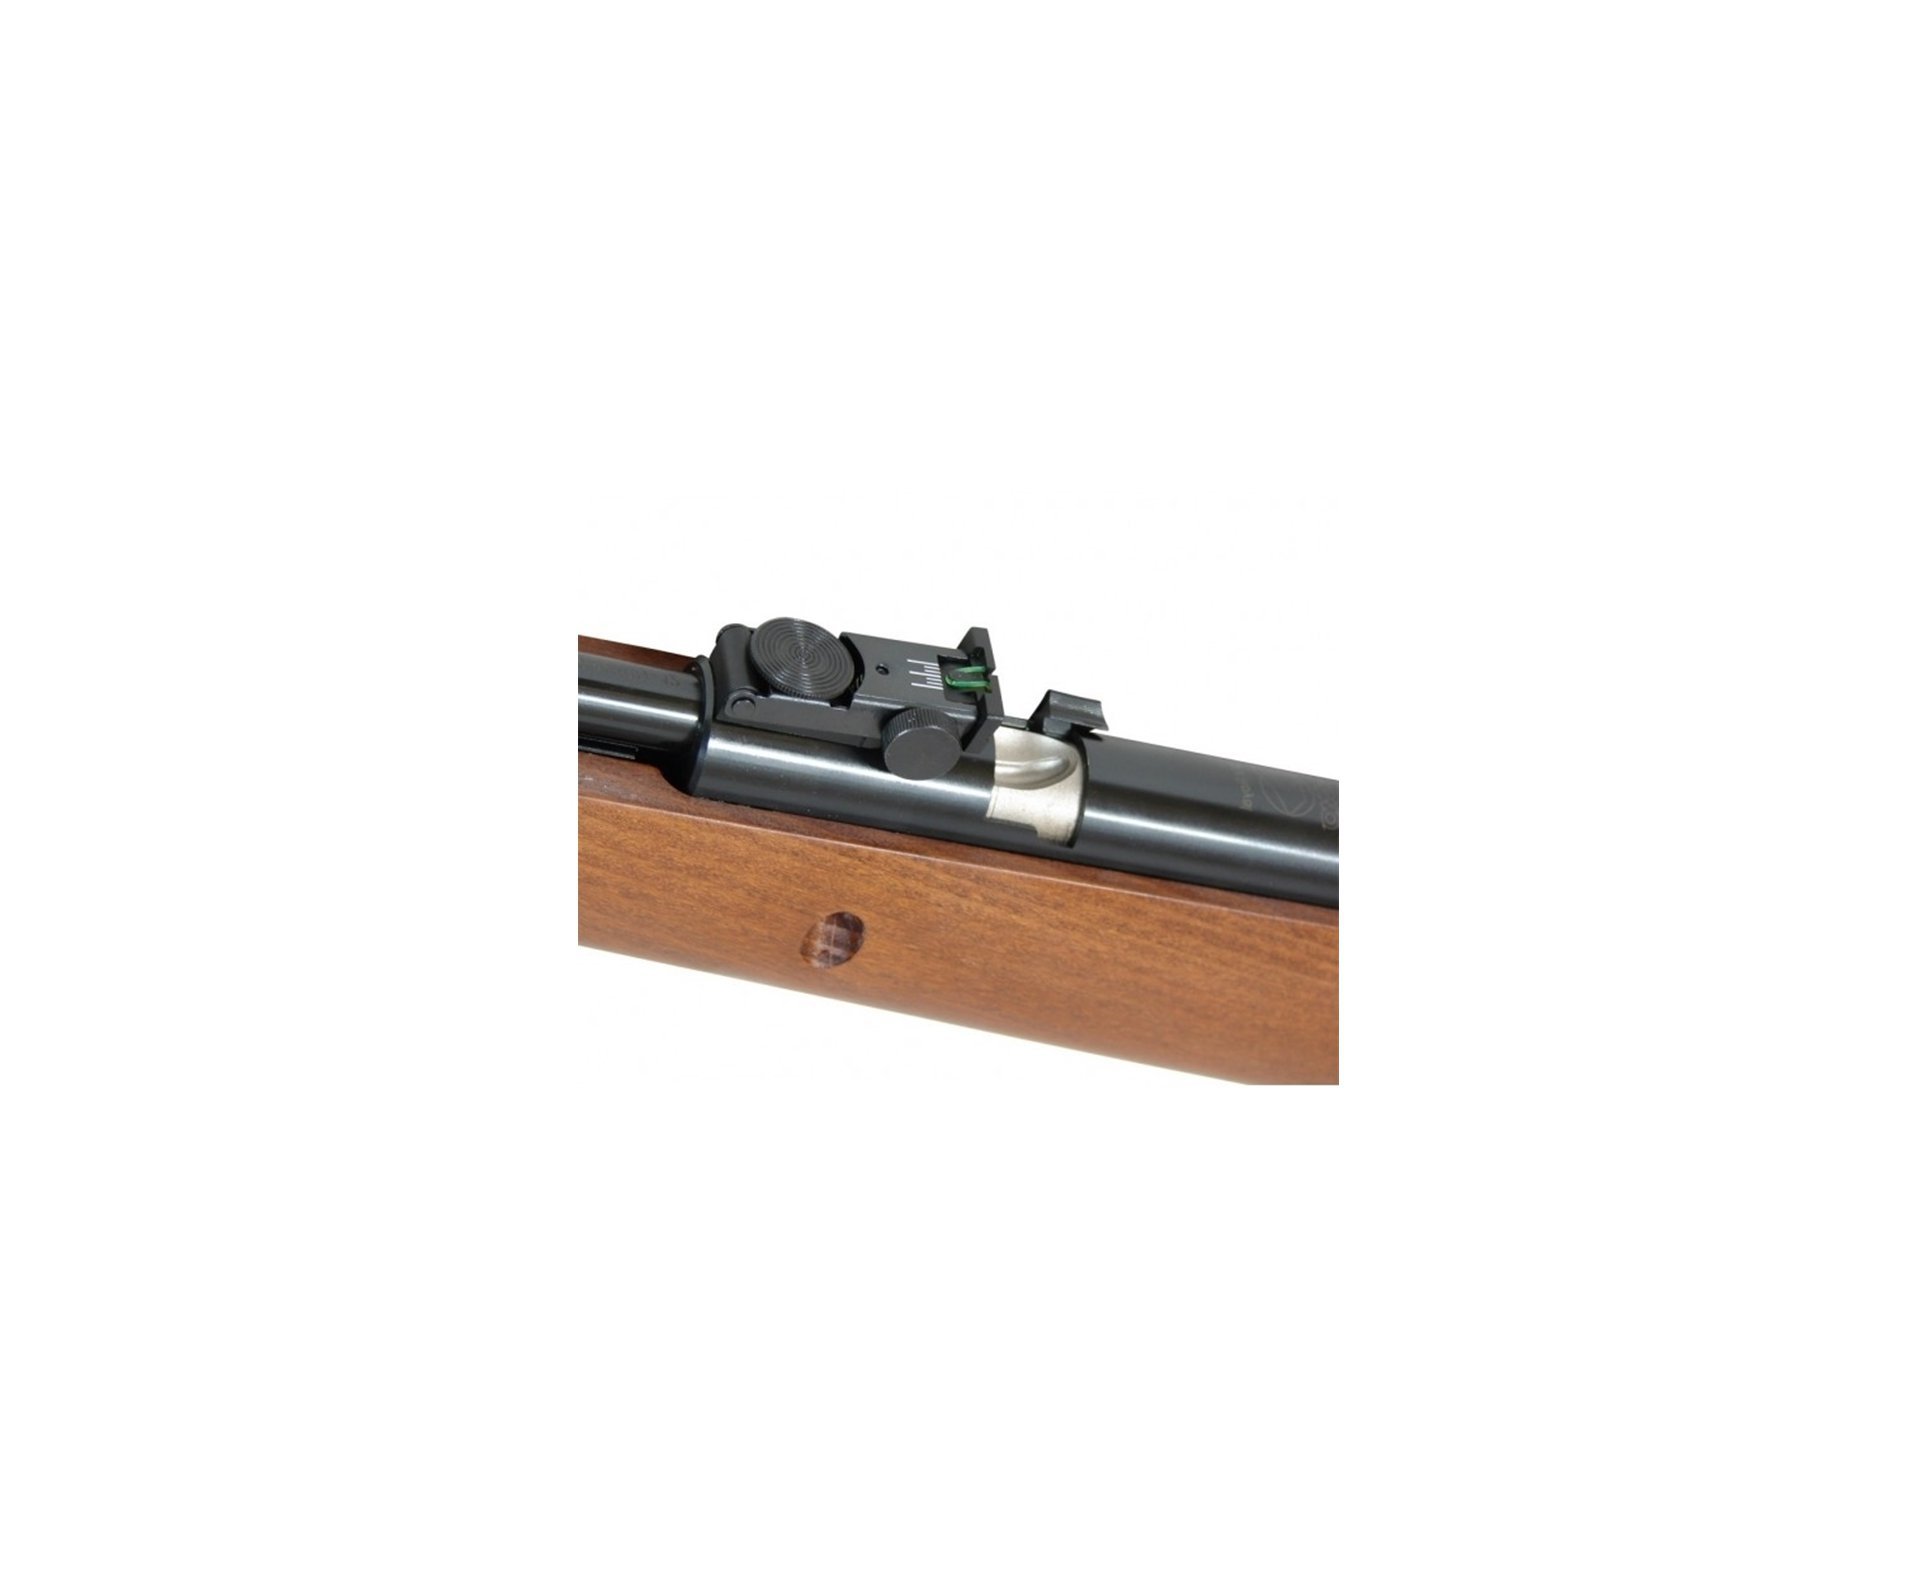 Carabina De Pressão Cfx Royal Madeira Cal. 5,5mm + Luneta 4x32 Wr  - Gamo